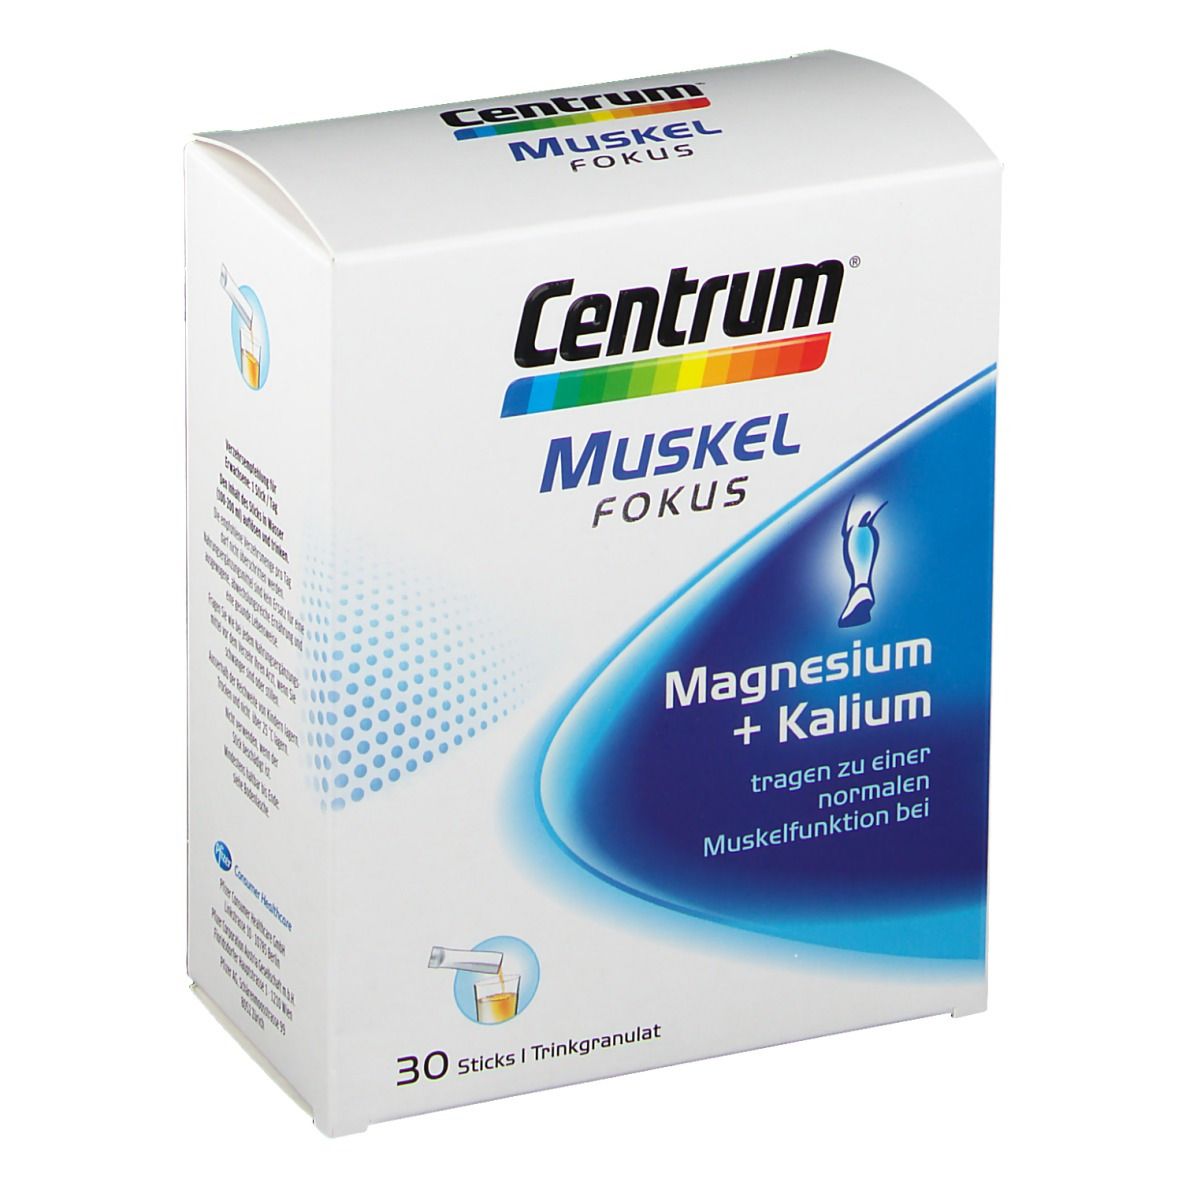 Centrum Muskel Fokus Magnesium + Kalium